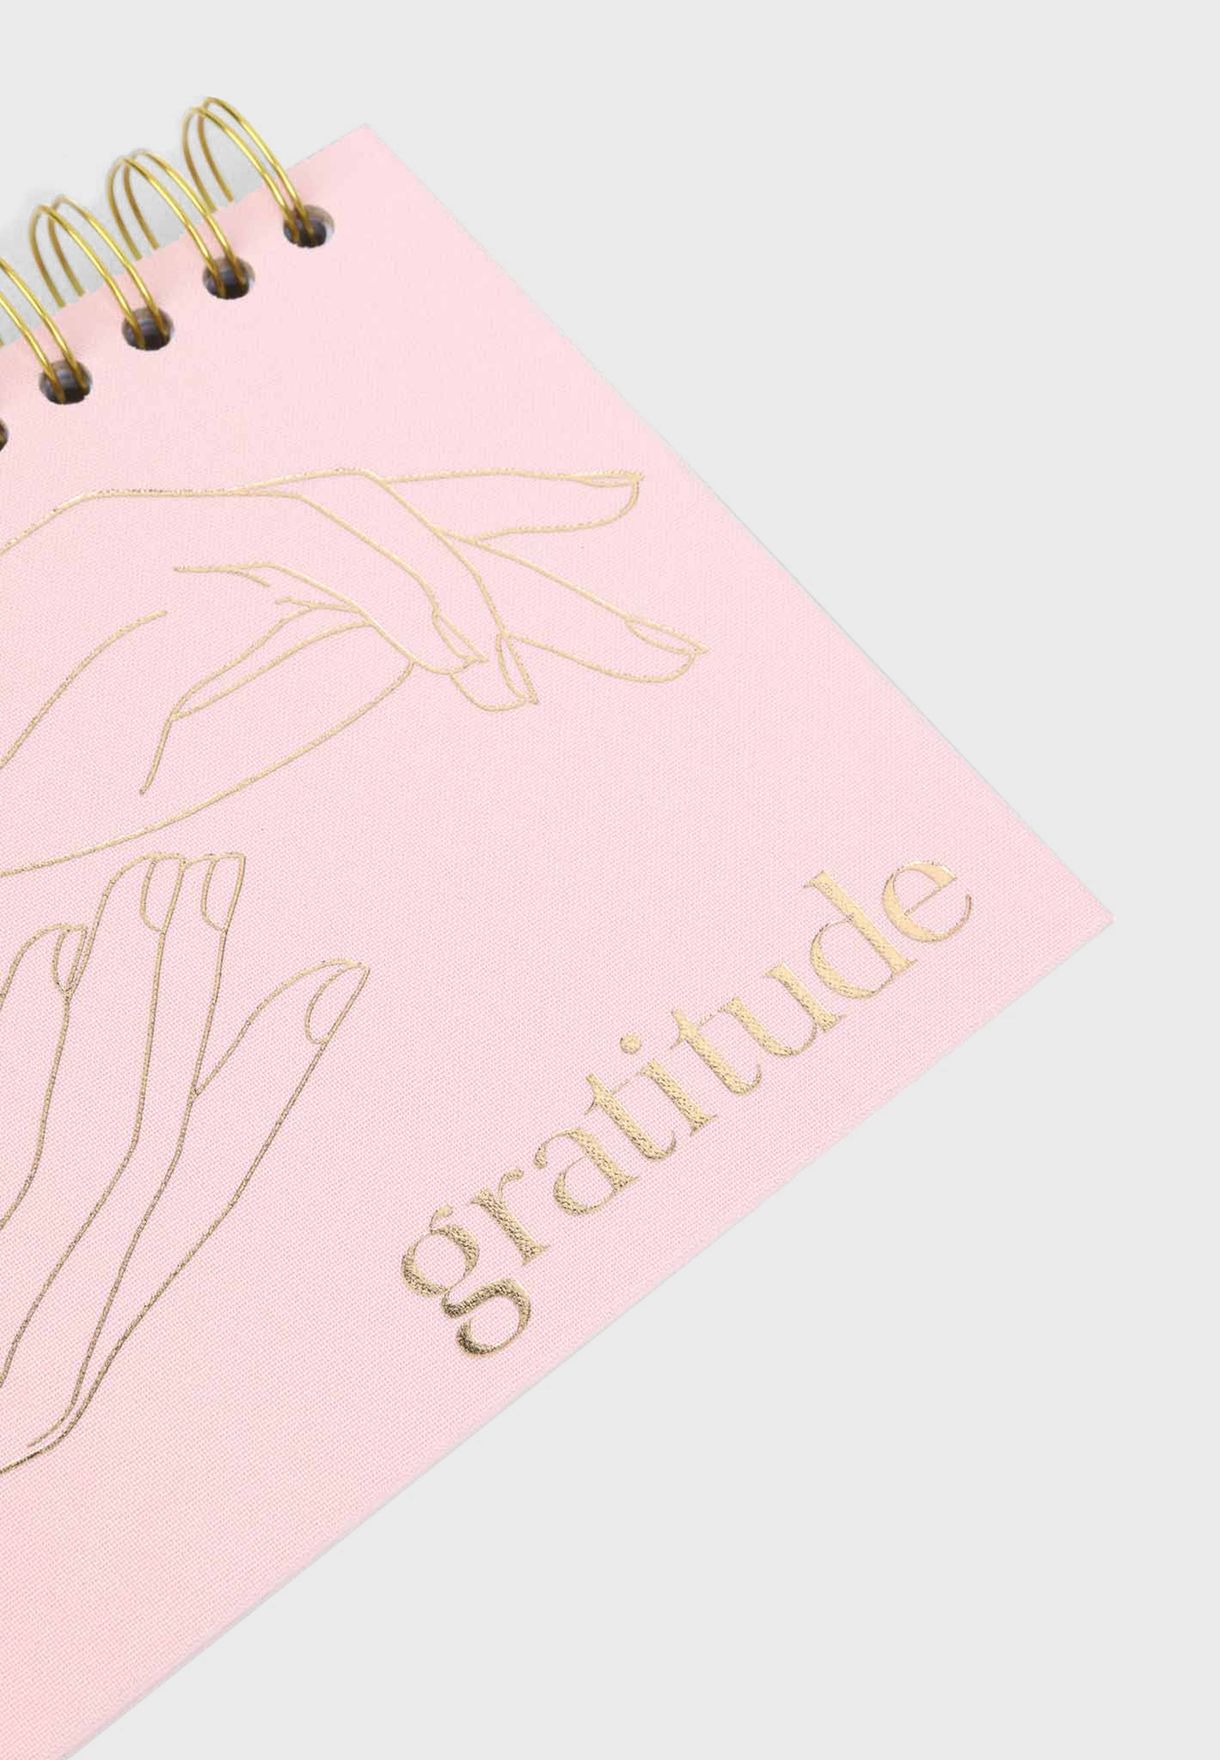 Achievher Pink Linen A5 Gratitude Journal